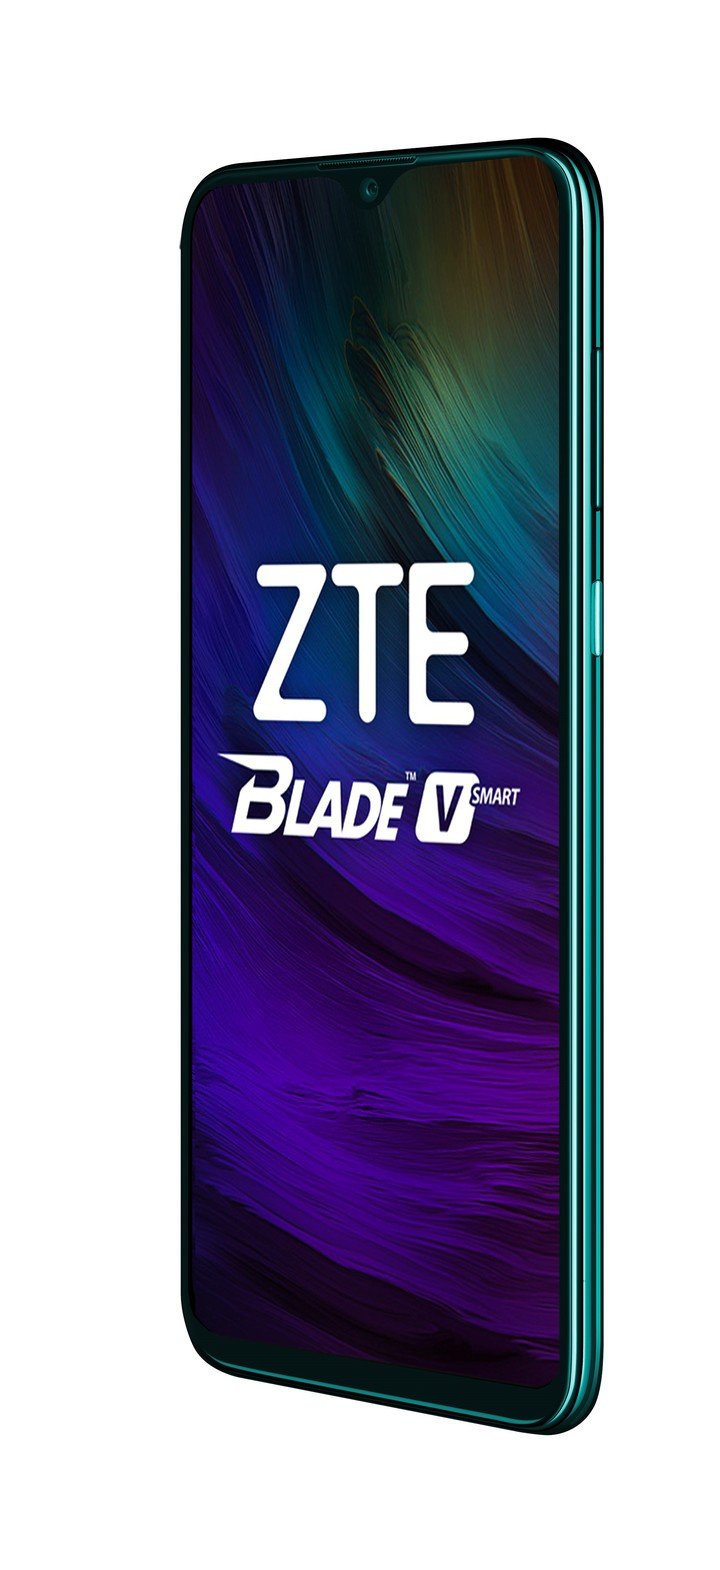 ZTE Blade V Smart.  Pantalla Full Display HD + de 6.49 ”, chip Mediatek Helio P60 Octa-Core 2.0GHz, cámara triple de 16MP, 8MP y 2MP.  Batería de 5000 mAh.  Precio: $ 28,999.